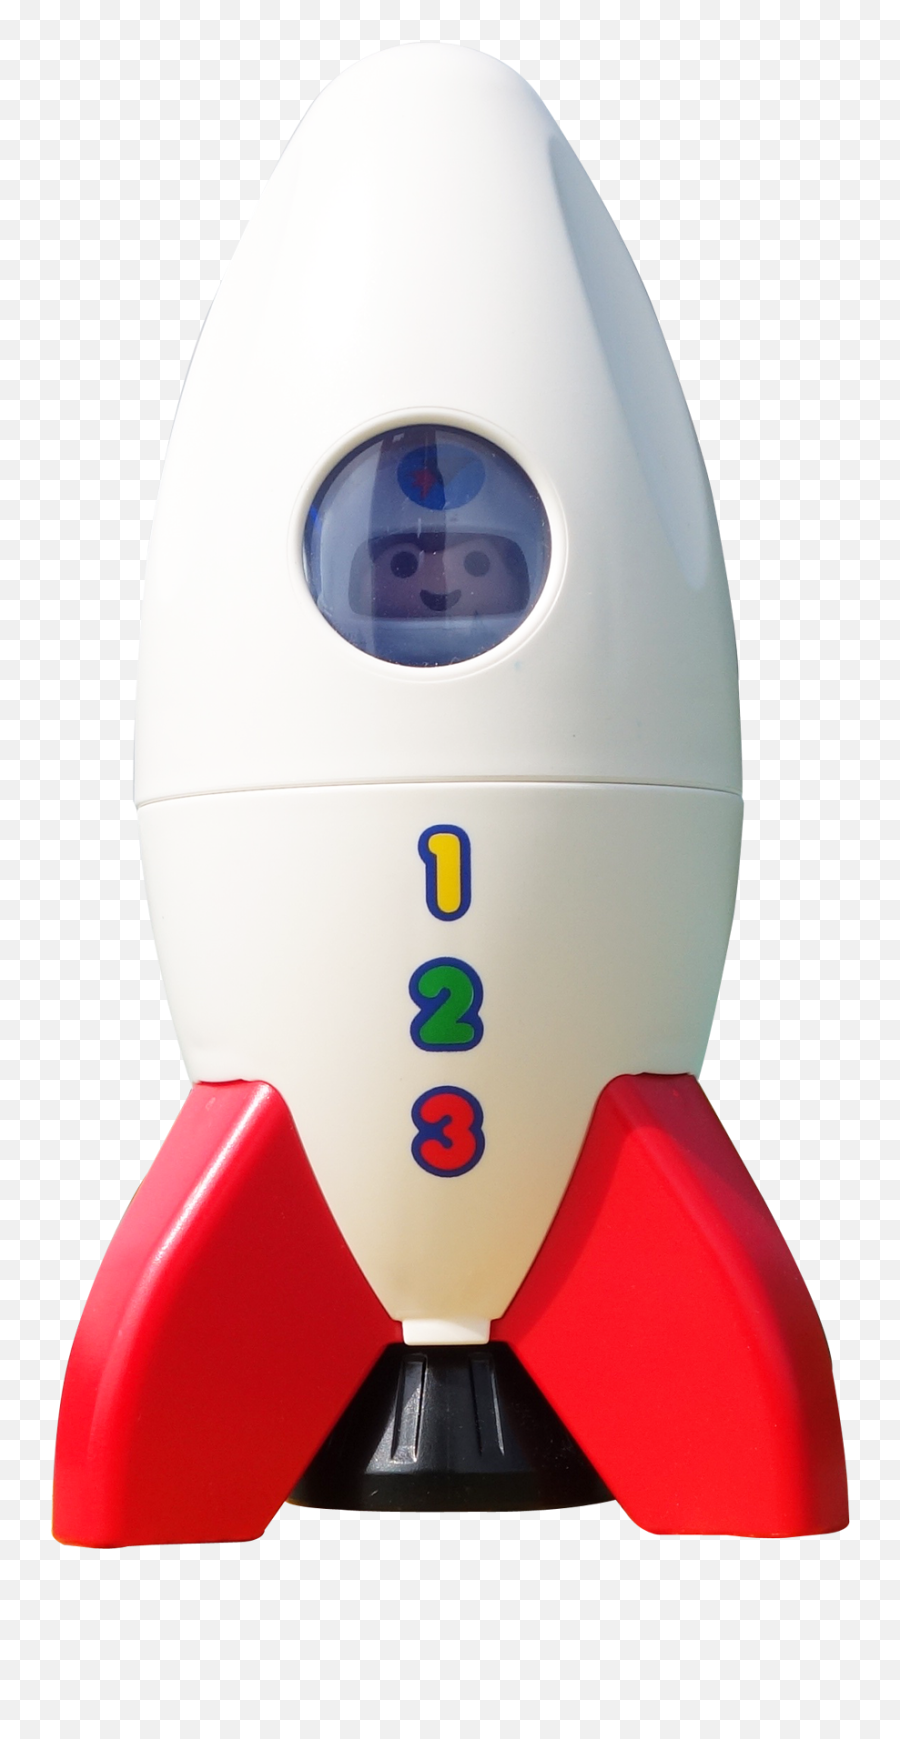 Rocket Png Transparent Image - Pngpix Rockets With Ttransparent Background,Rocket Png